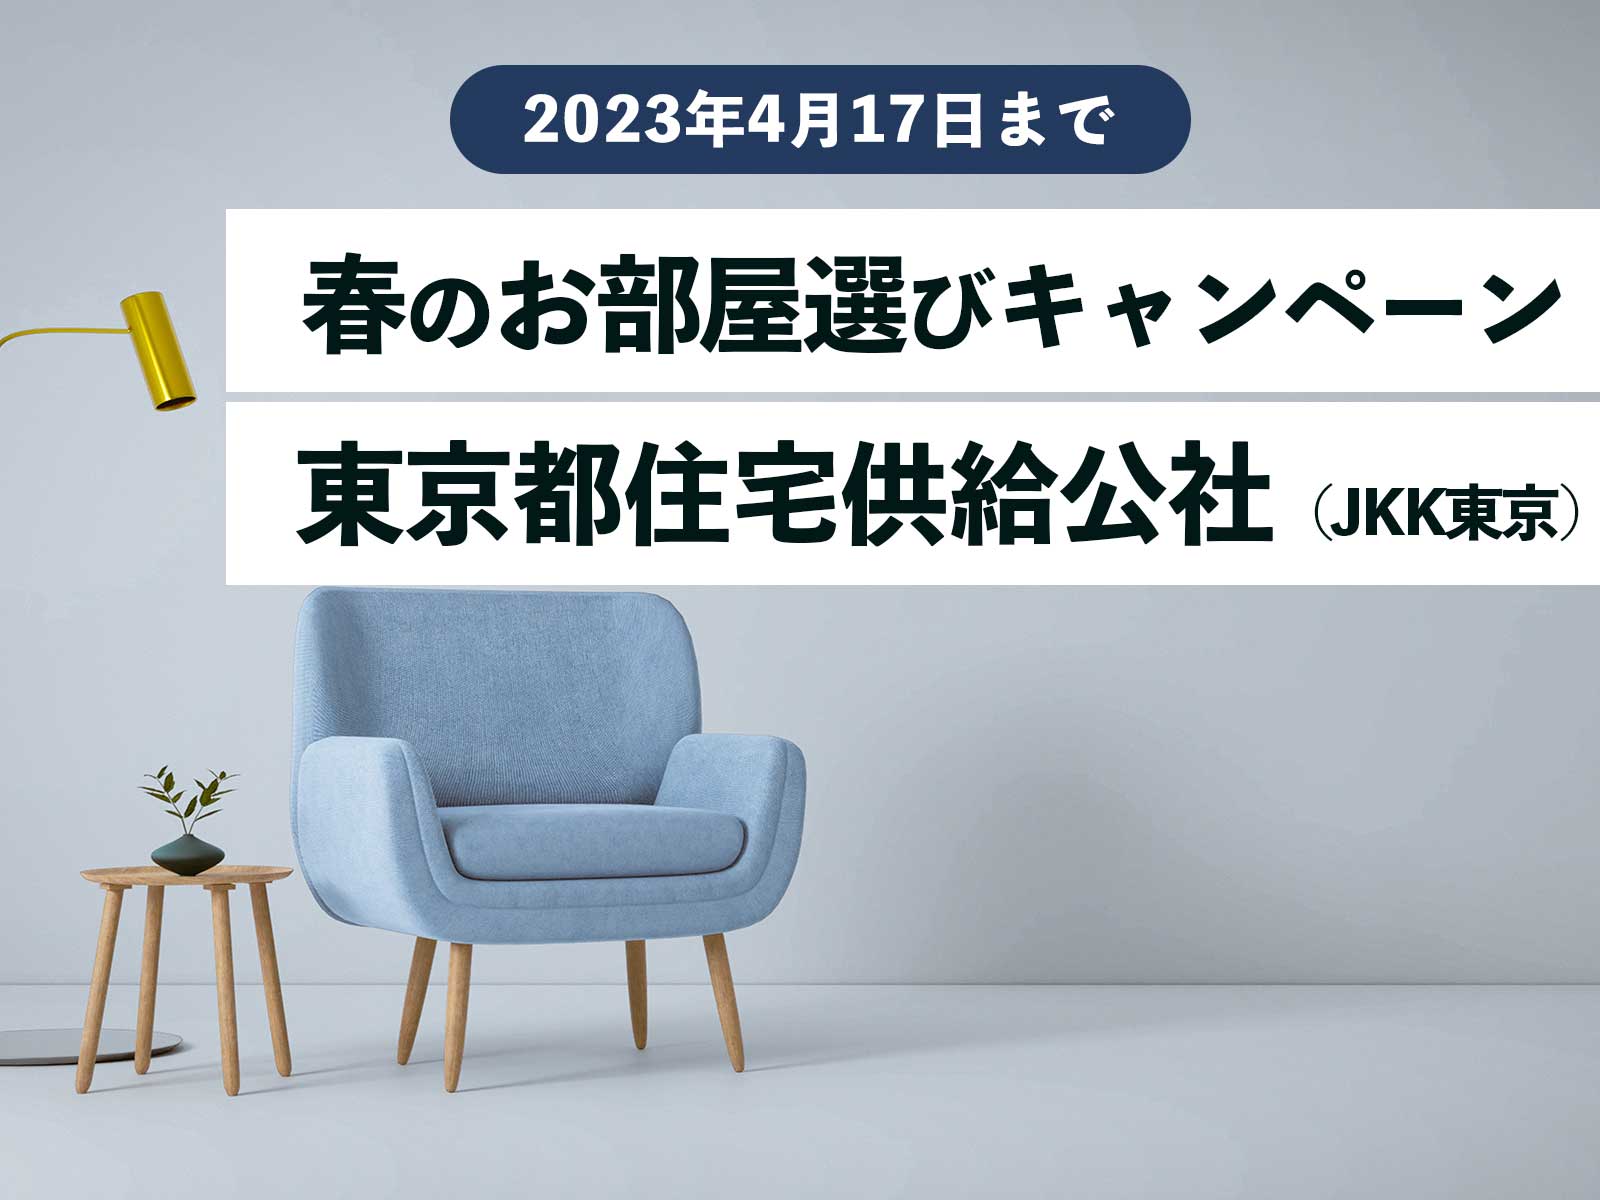 【募集情報】東京都住宅供給公社（JKK東京）春のお部屋選びキャンペーン 2023年4月17日（月）まで